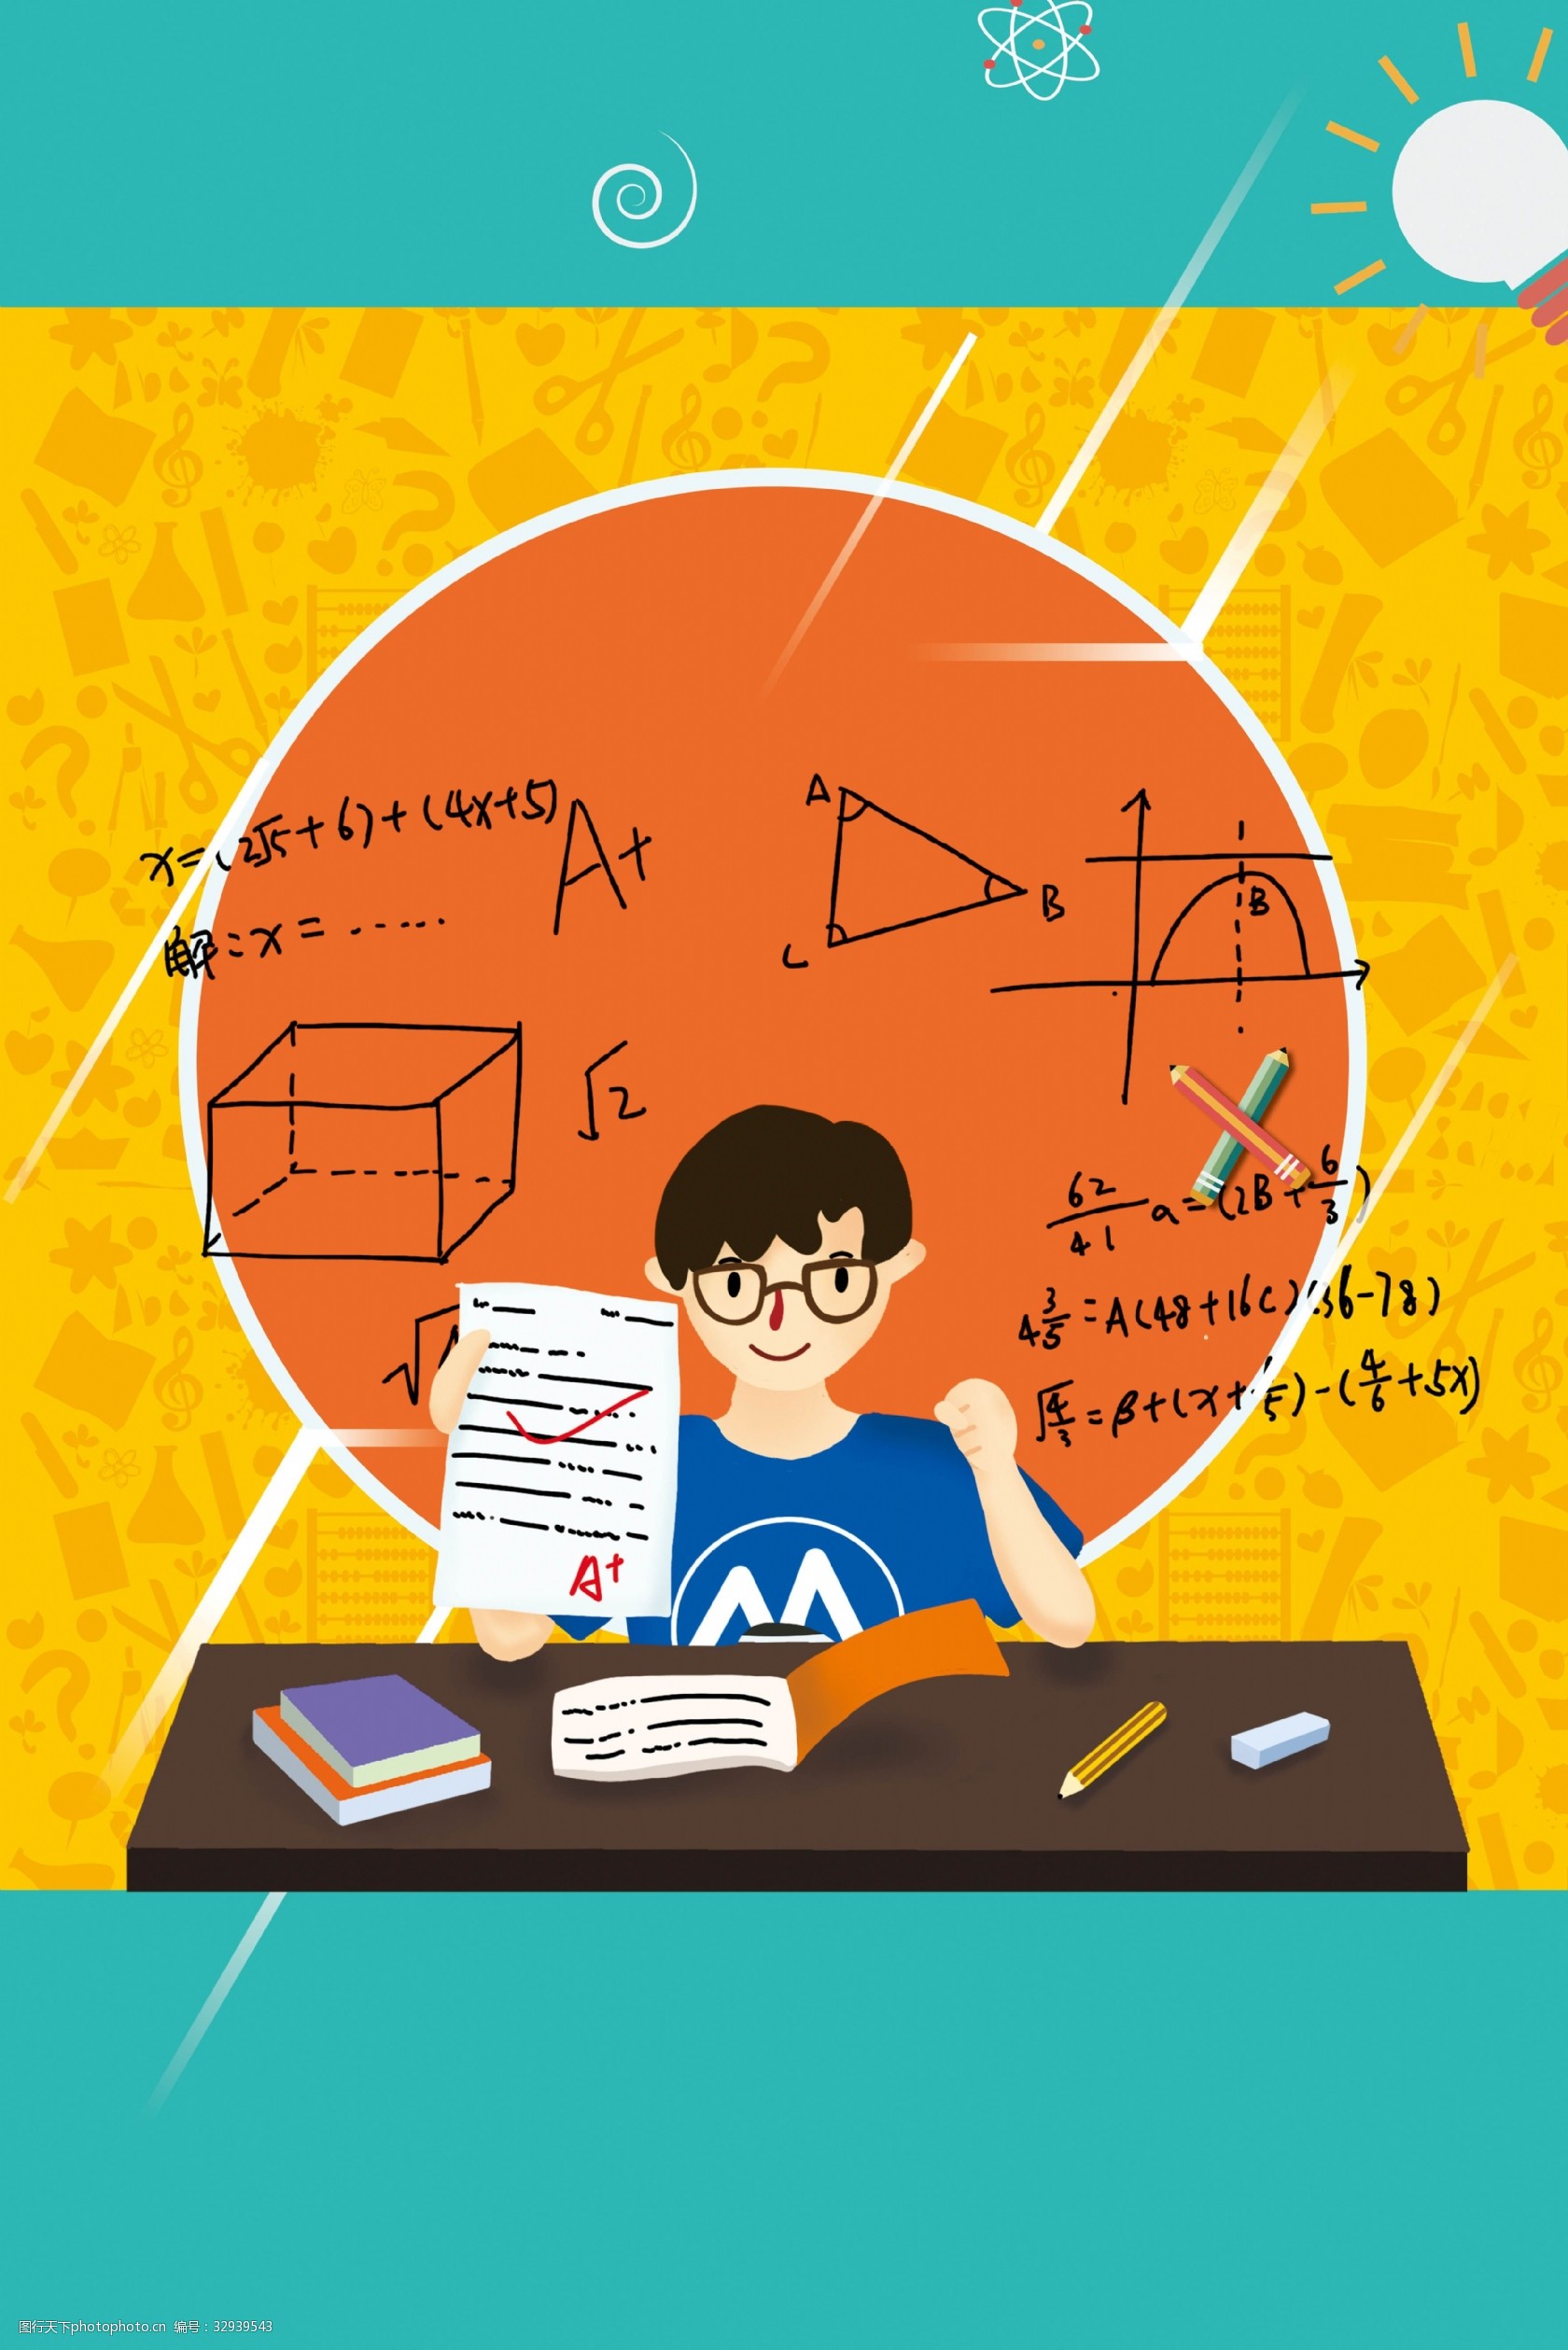 关键词:复习高考卡通背景海报 复习 预习 数学 奥数 学习 学生 高考